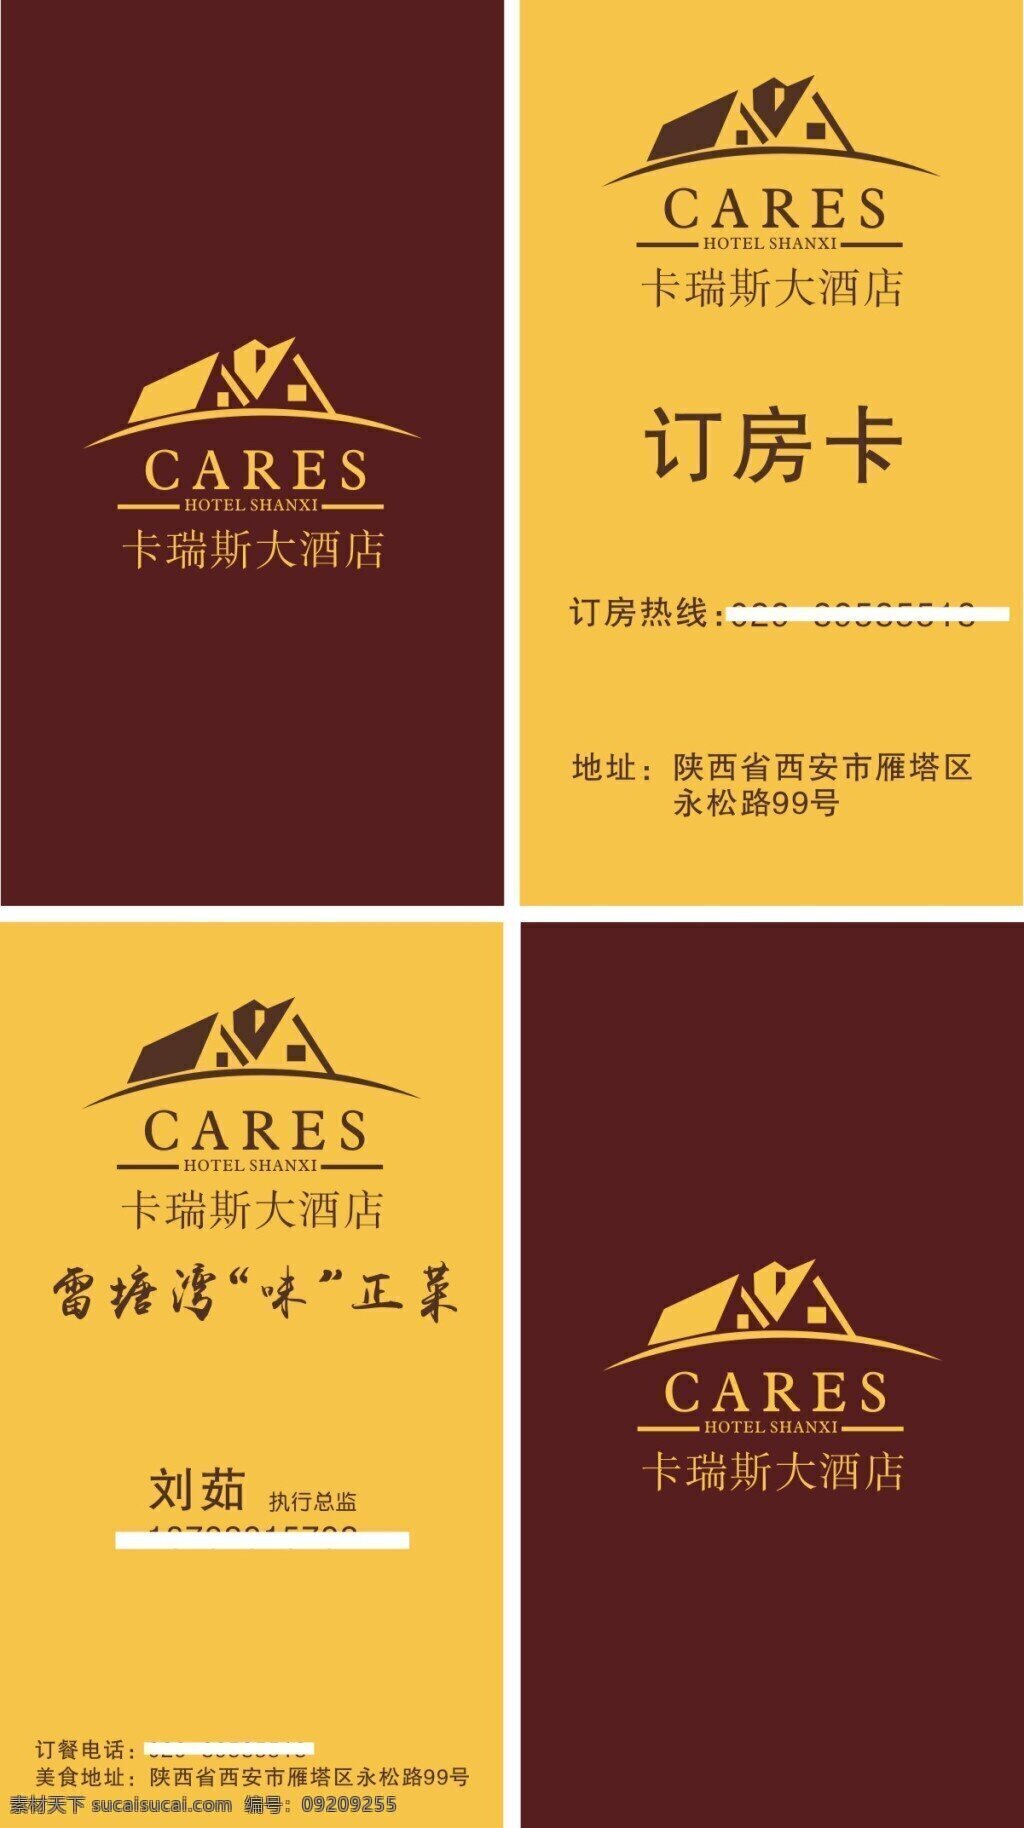 卡瑞斯大酒店 名片 卡瑞斯 大酒店 订房卡 logo